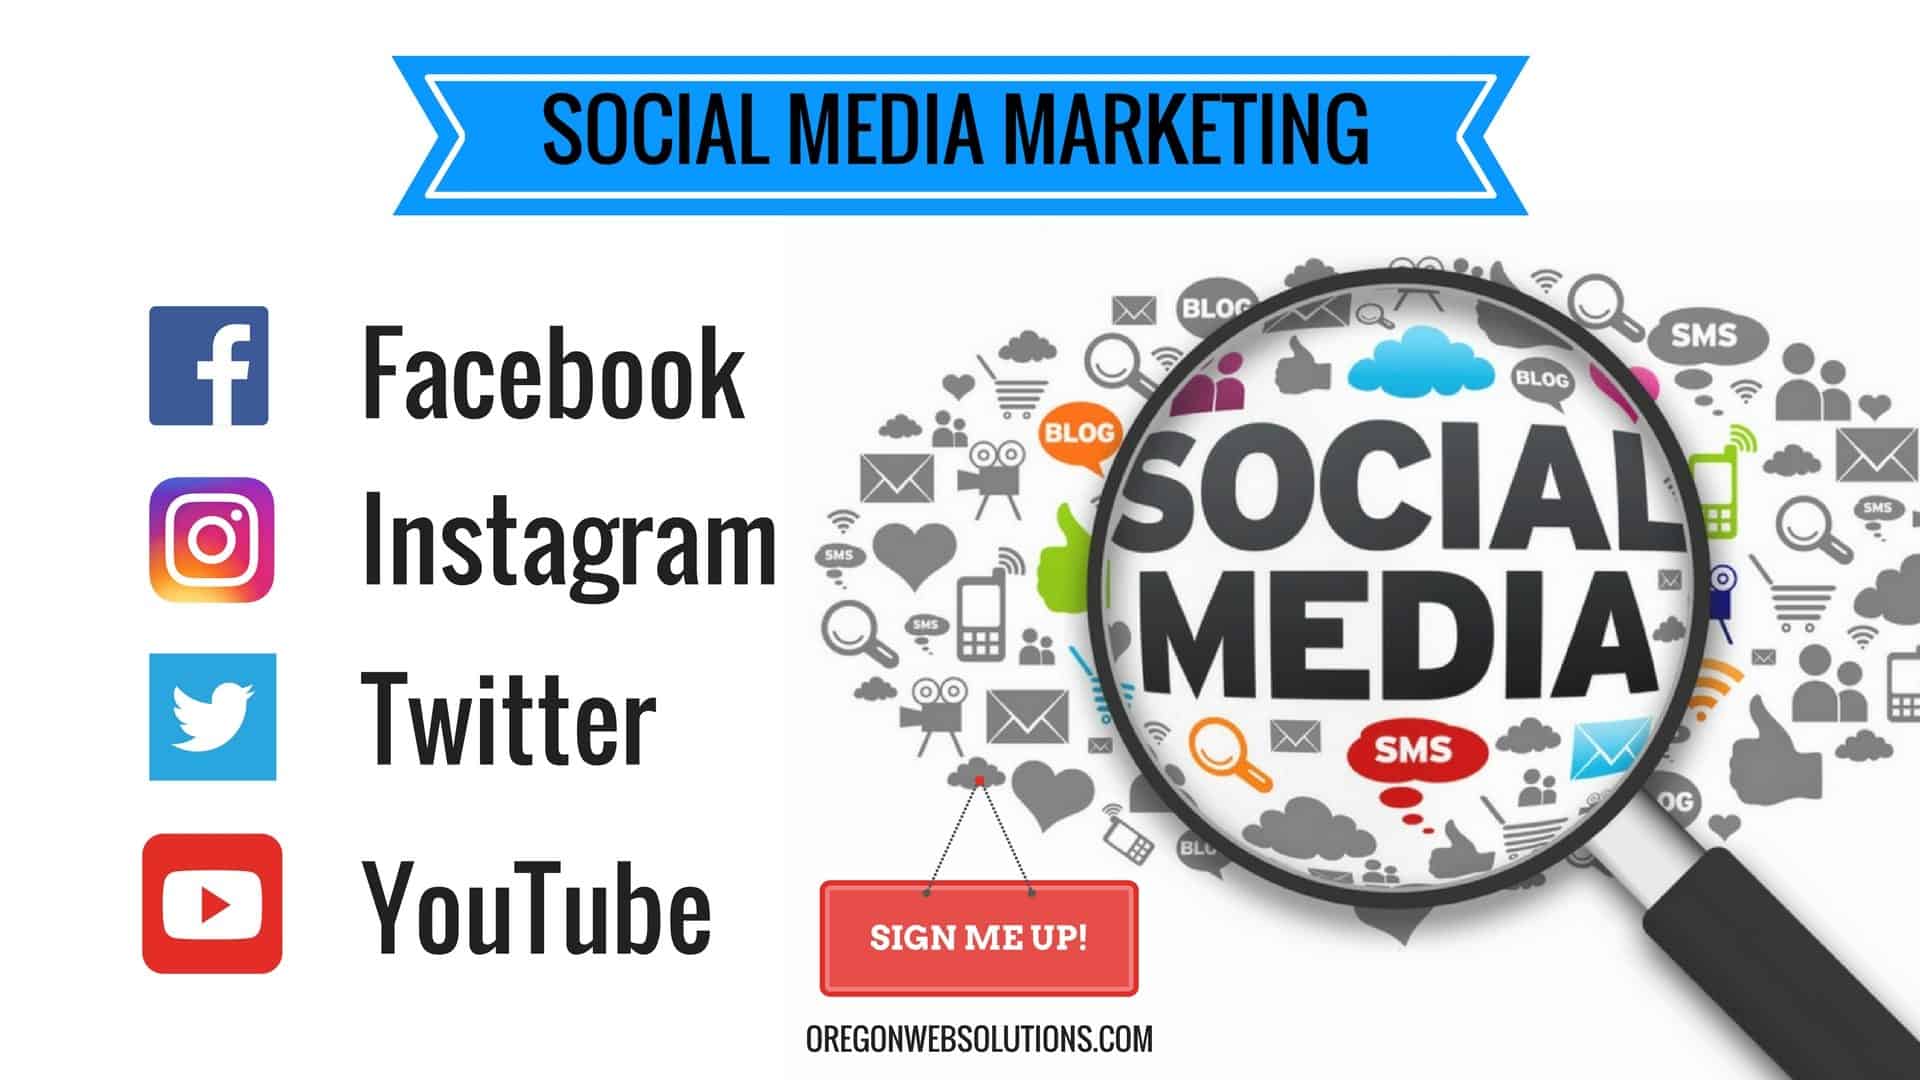 Làm sao để xây dựng kế hoạch Social Media Marketing hiệu quả?